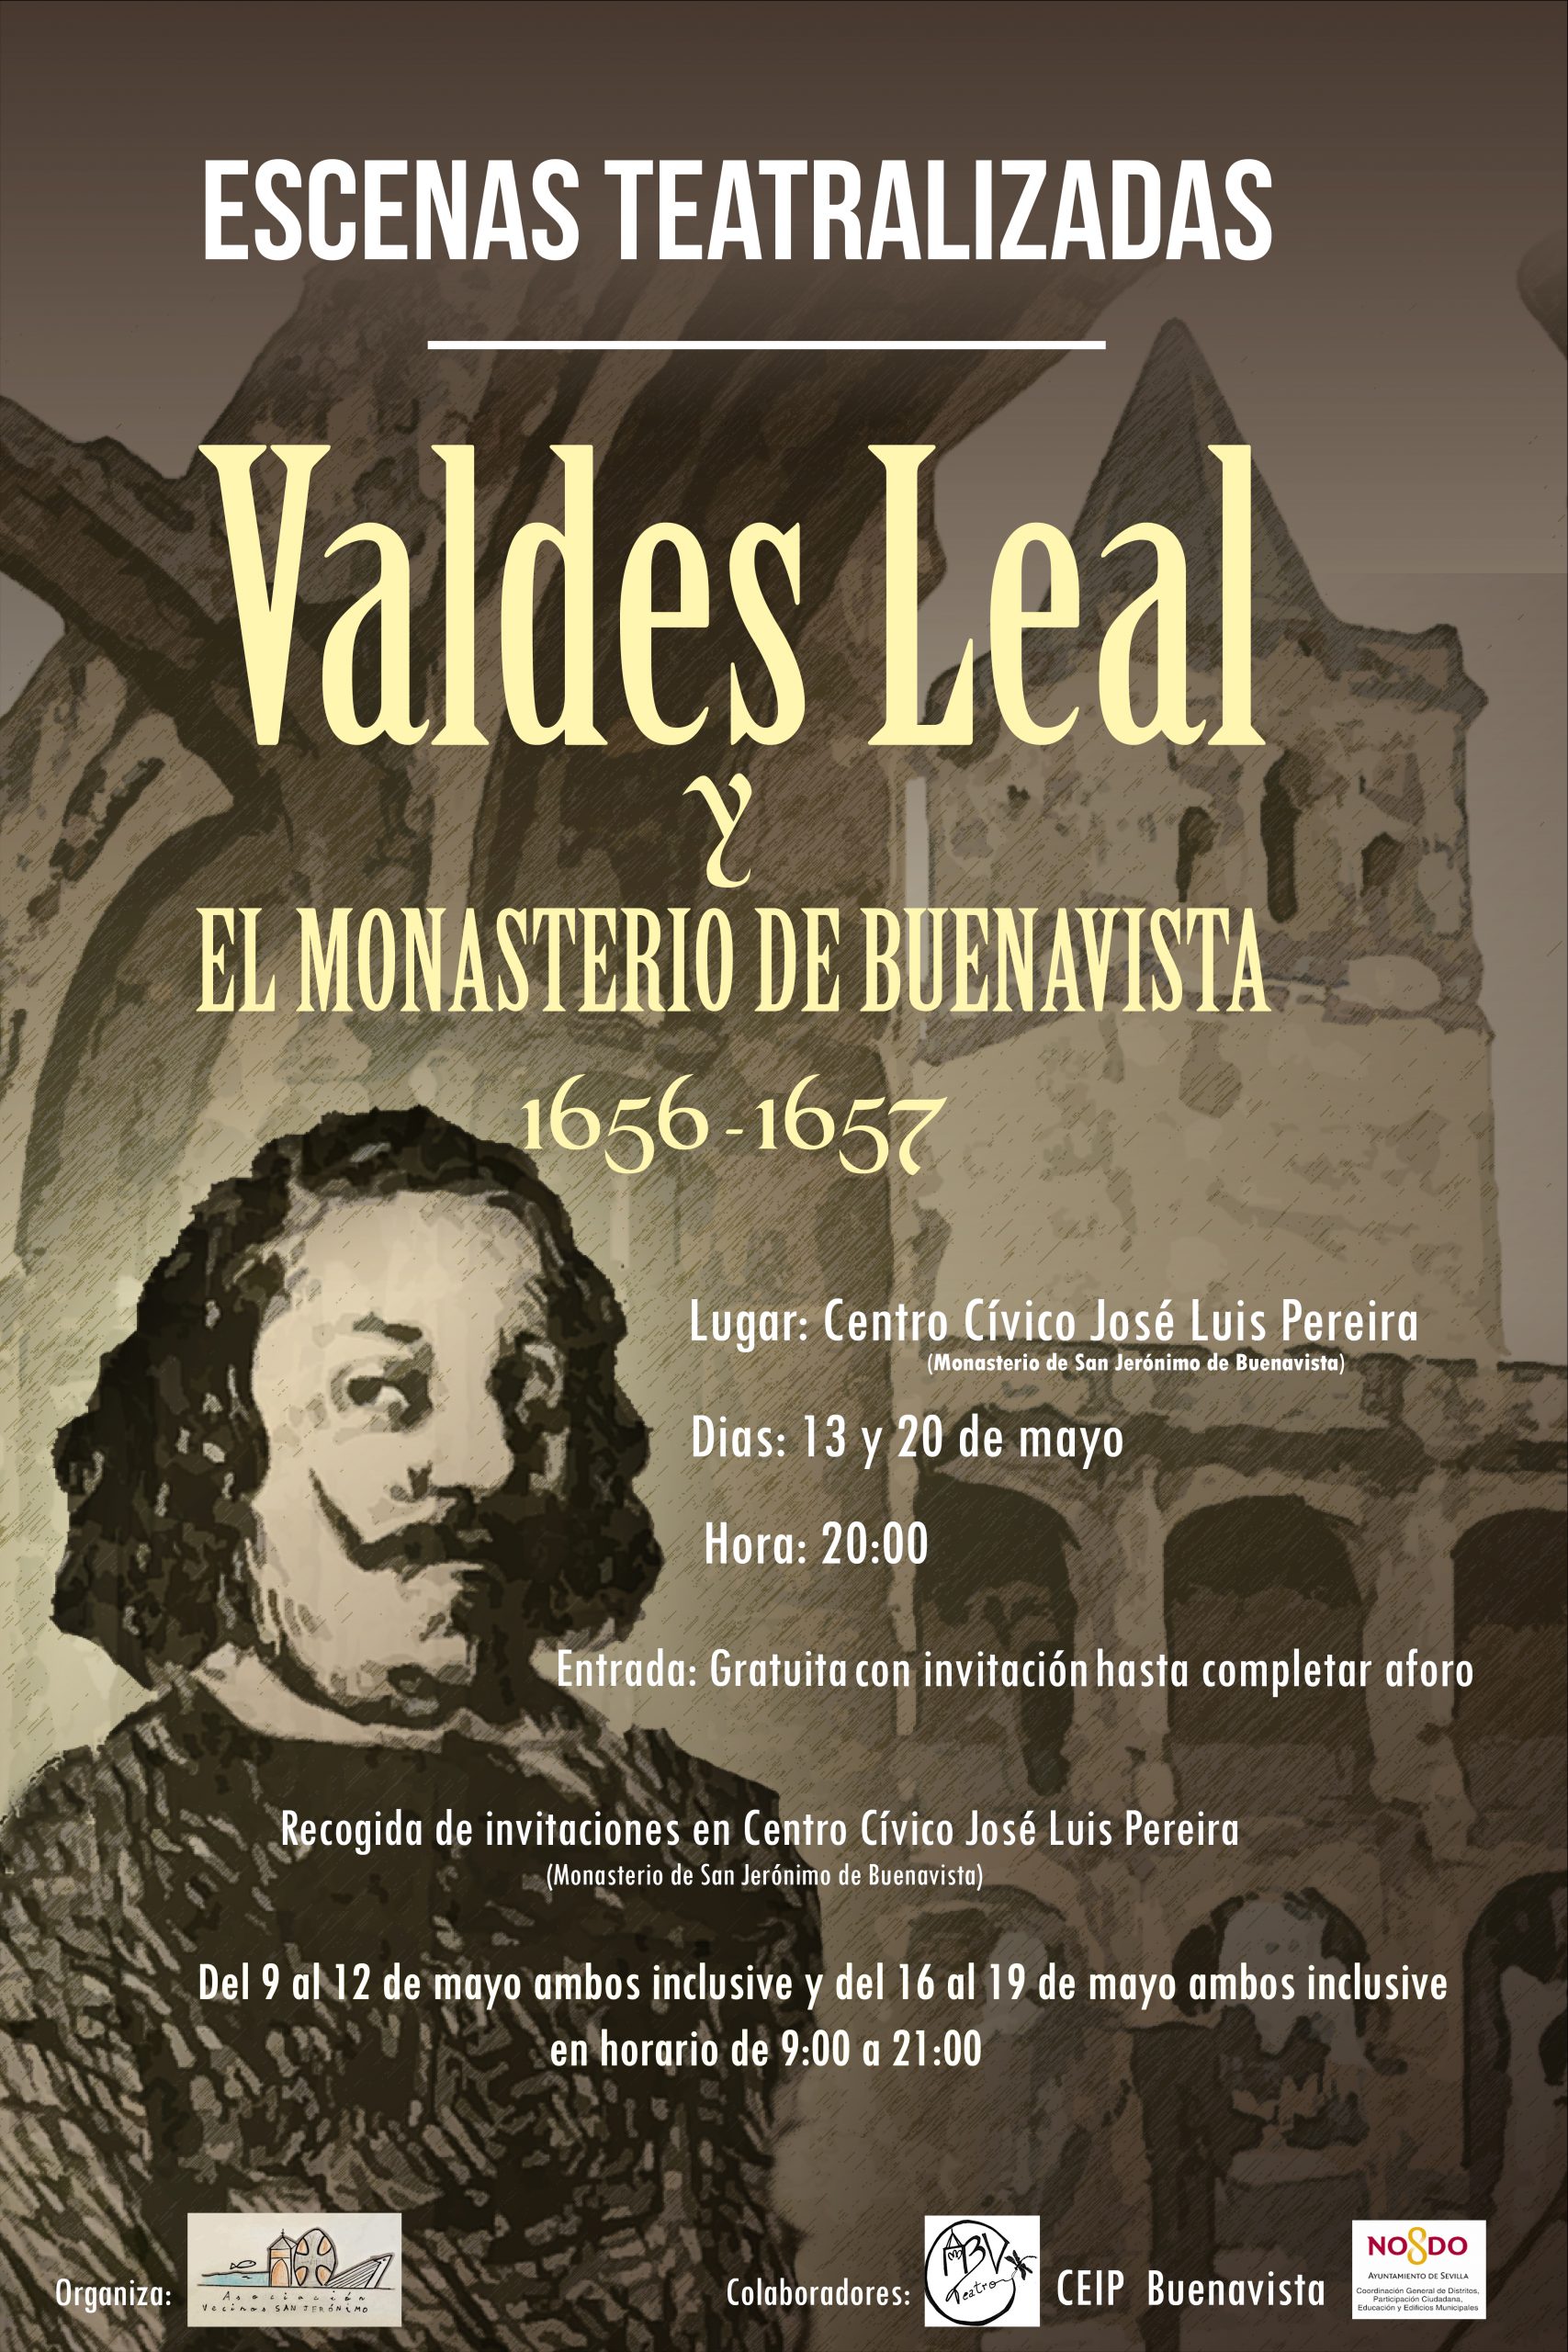 Escenas teatralizadas: Valdes Leal y el Monasterio de Buenavista